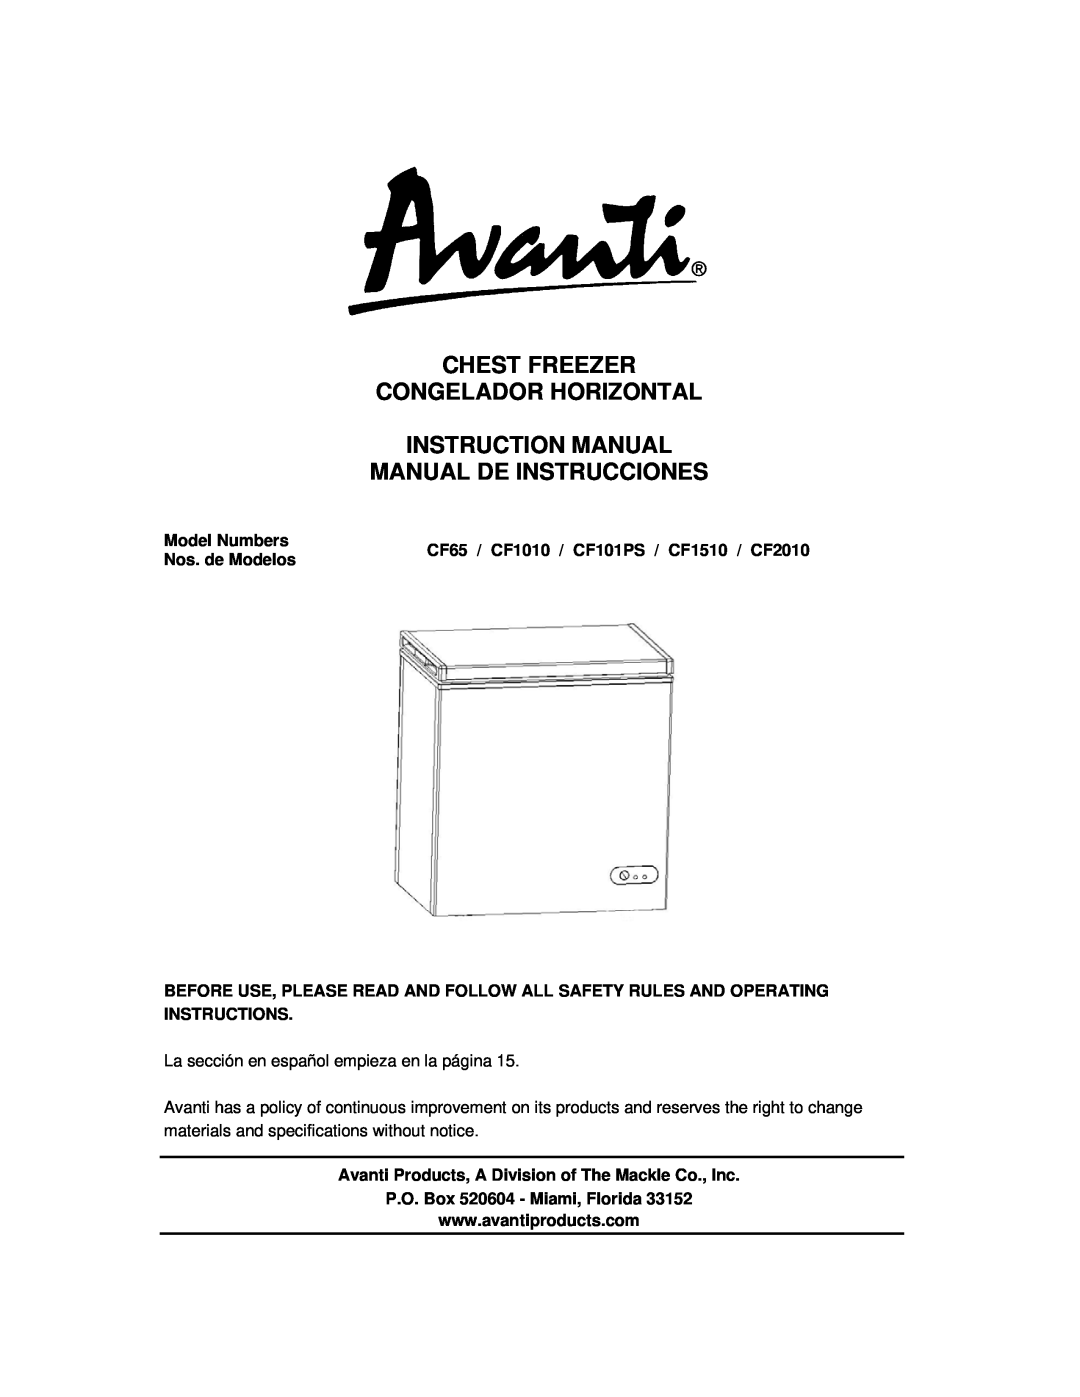 Avanti CF1010, CF1510, CF2010 instruction manual Manual De Instrucciones, P.O. Box 520604 - Miami, Florida 